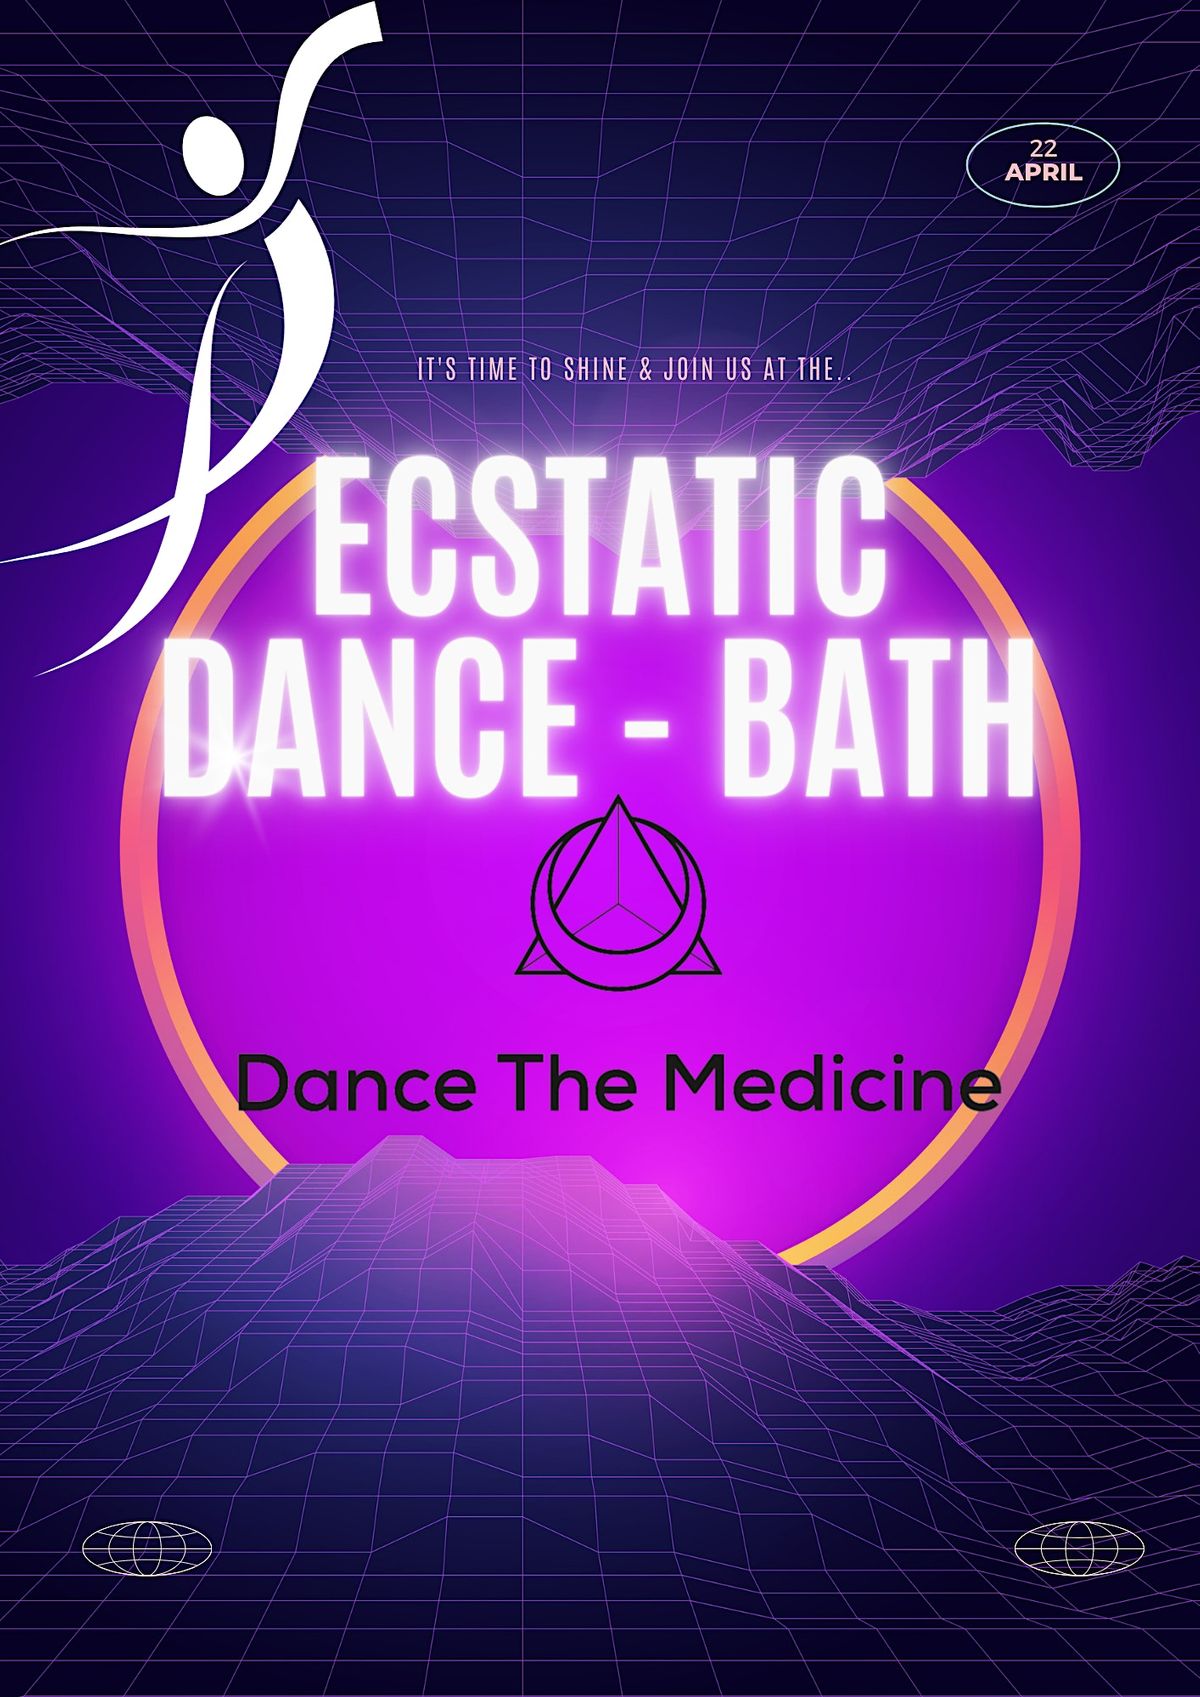 Ecstatic Dance - Bath